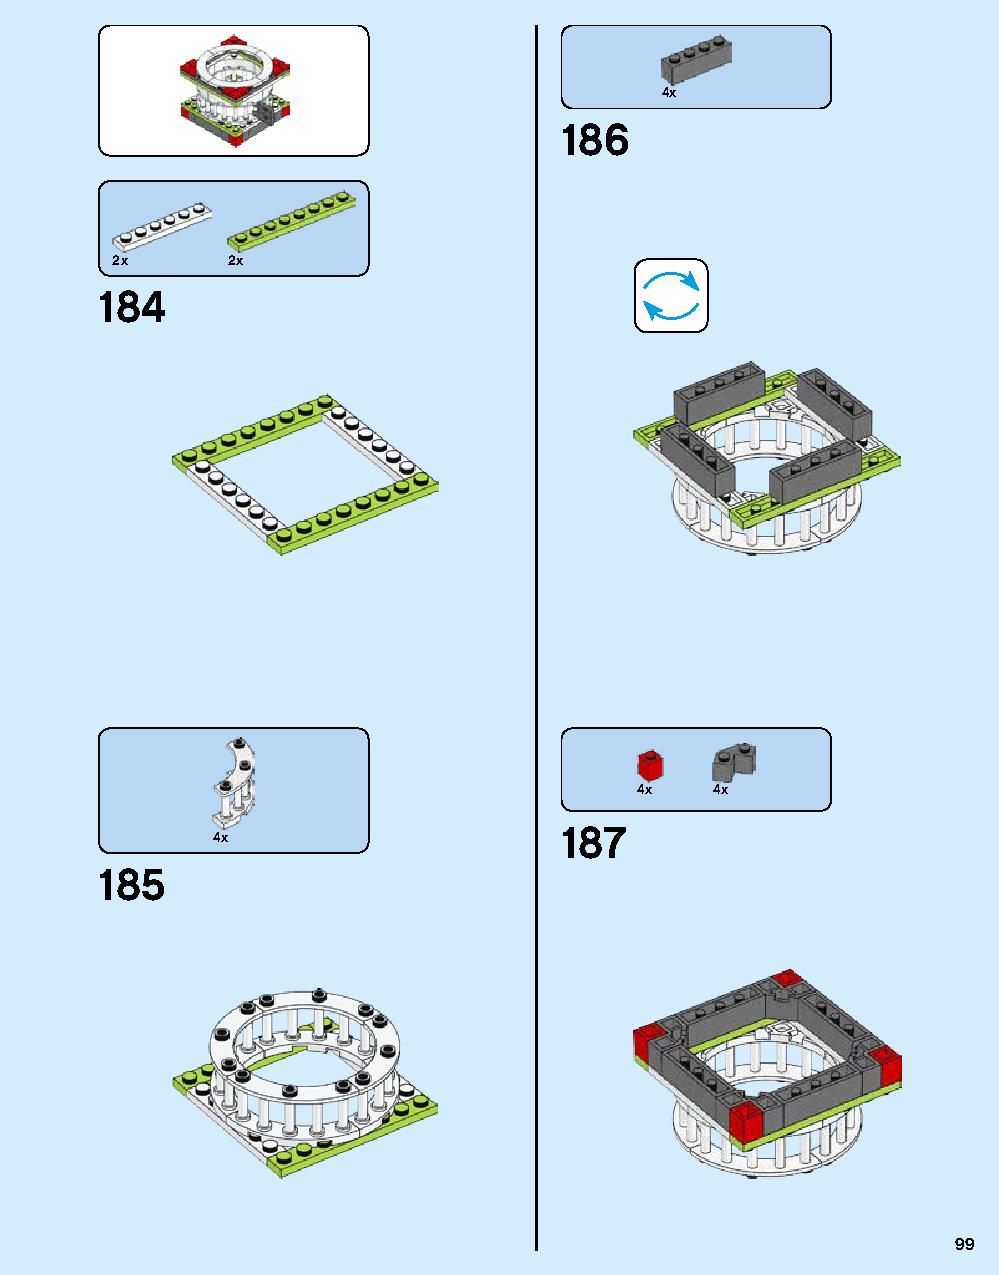 ニンジャゴー シティ 70620 レゴの商品情報 レゴの説明書・組立方法 99 page